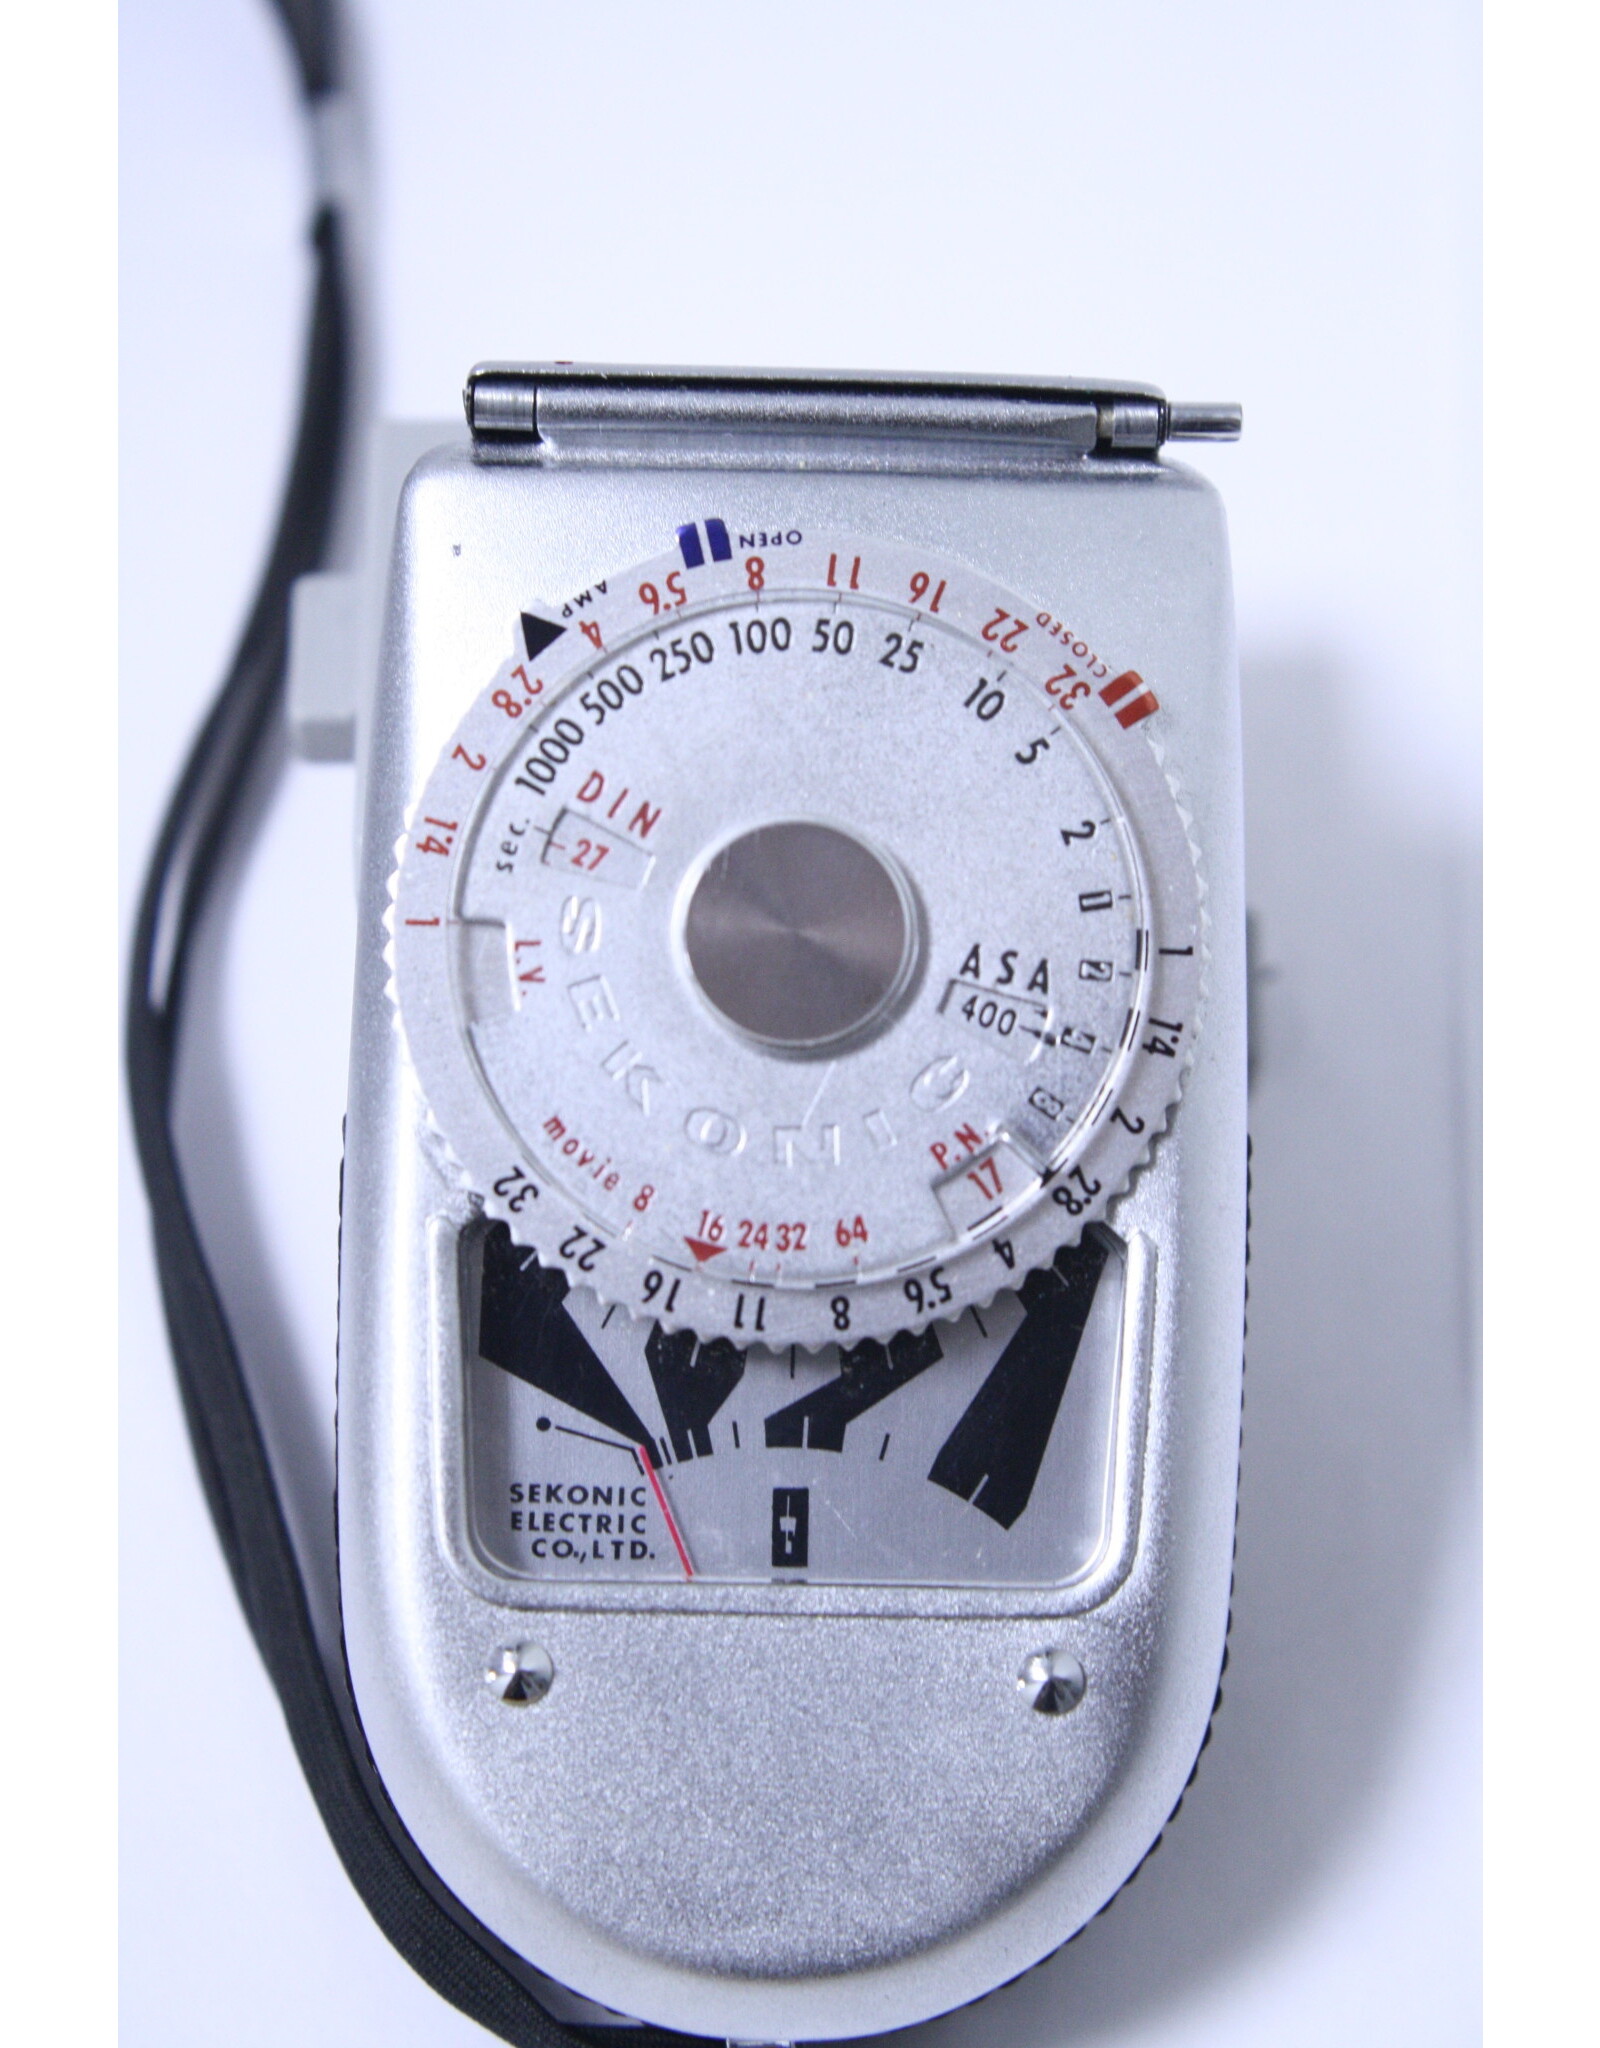 Sekonic Sekonic Leader Deluxe-2 Model 36 Exposure Meter (Pre-owned)